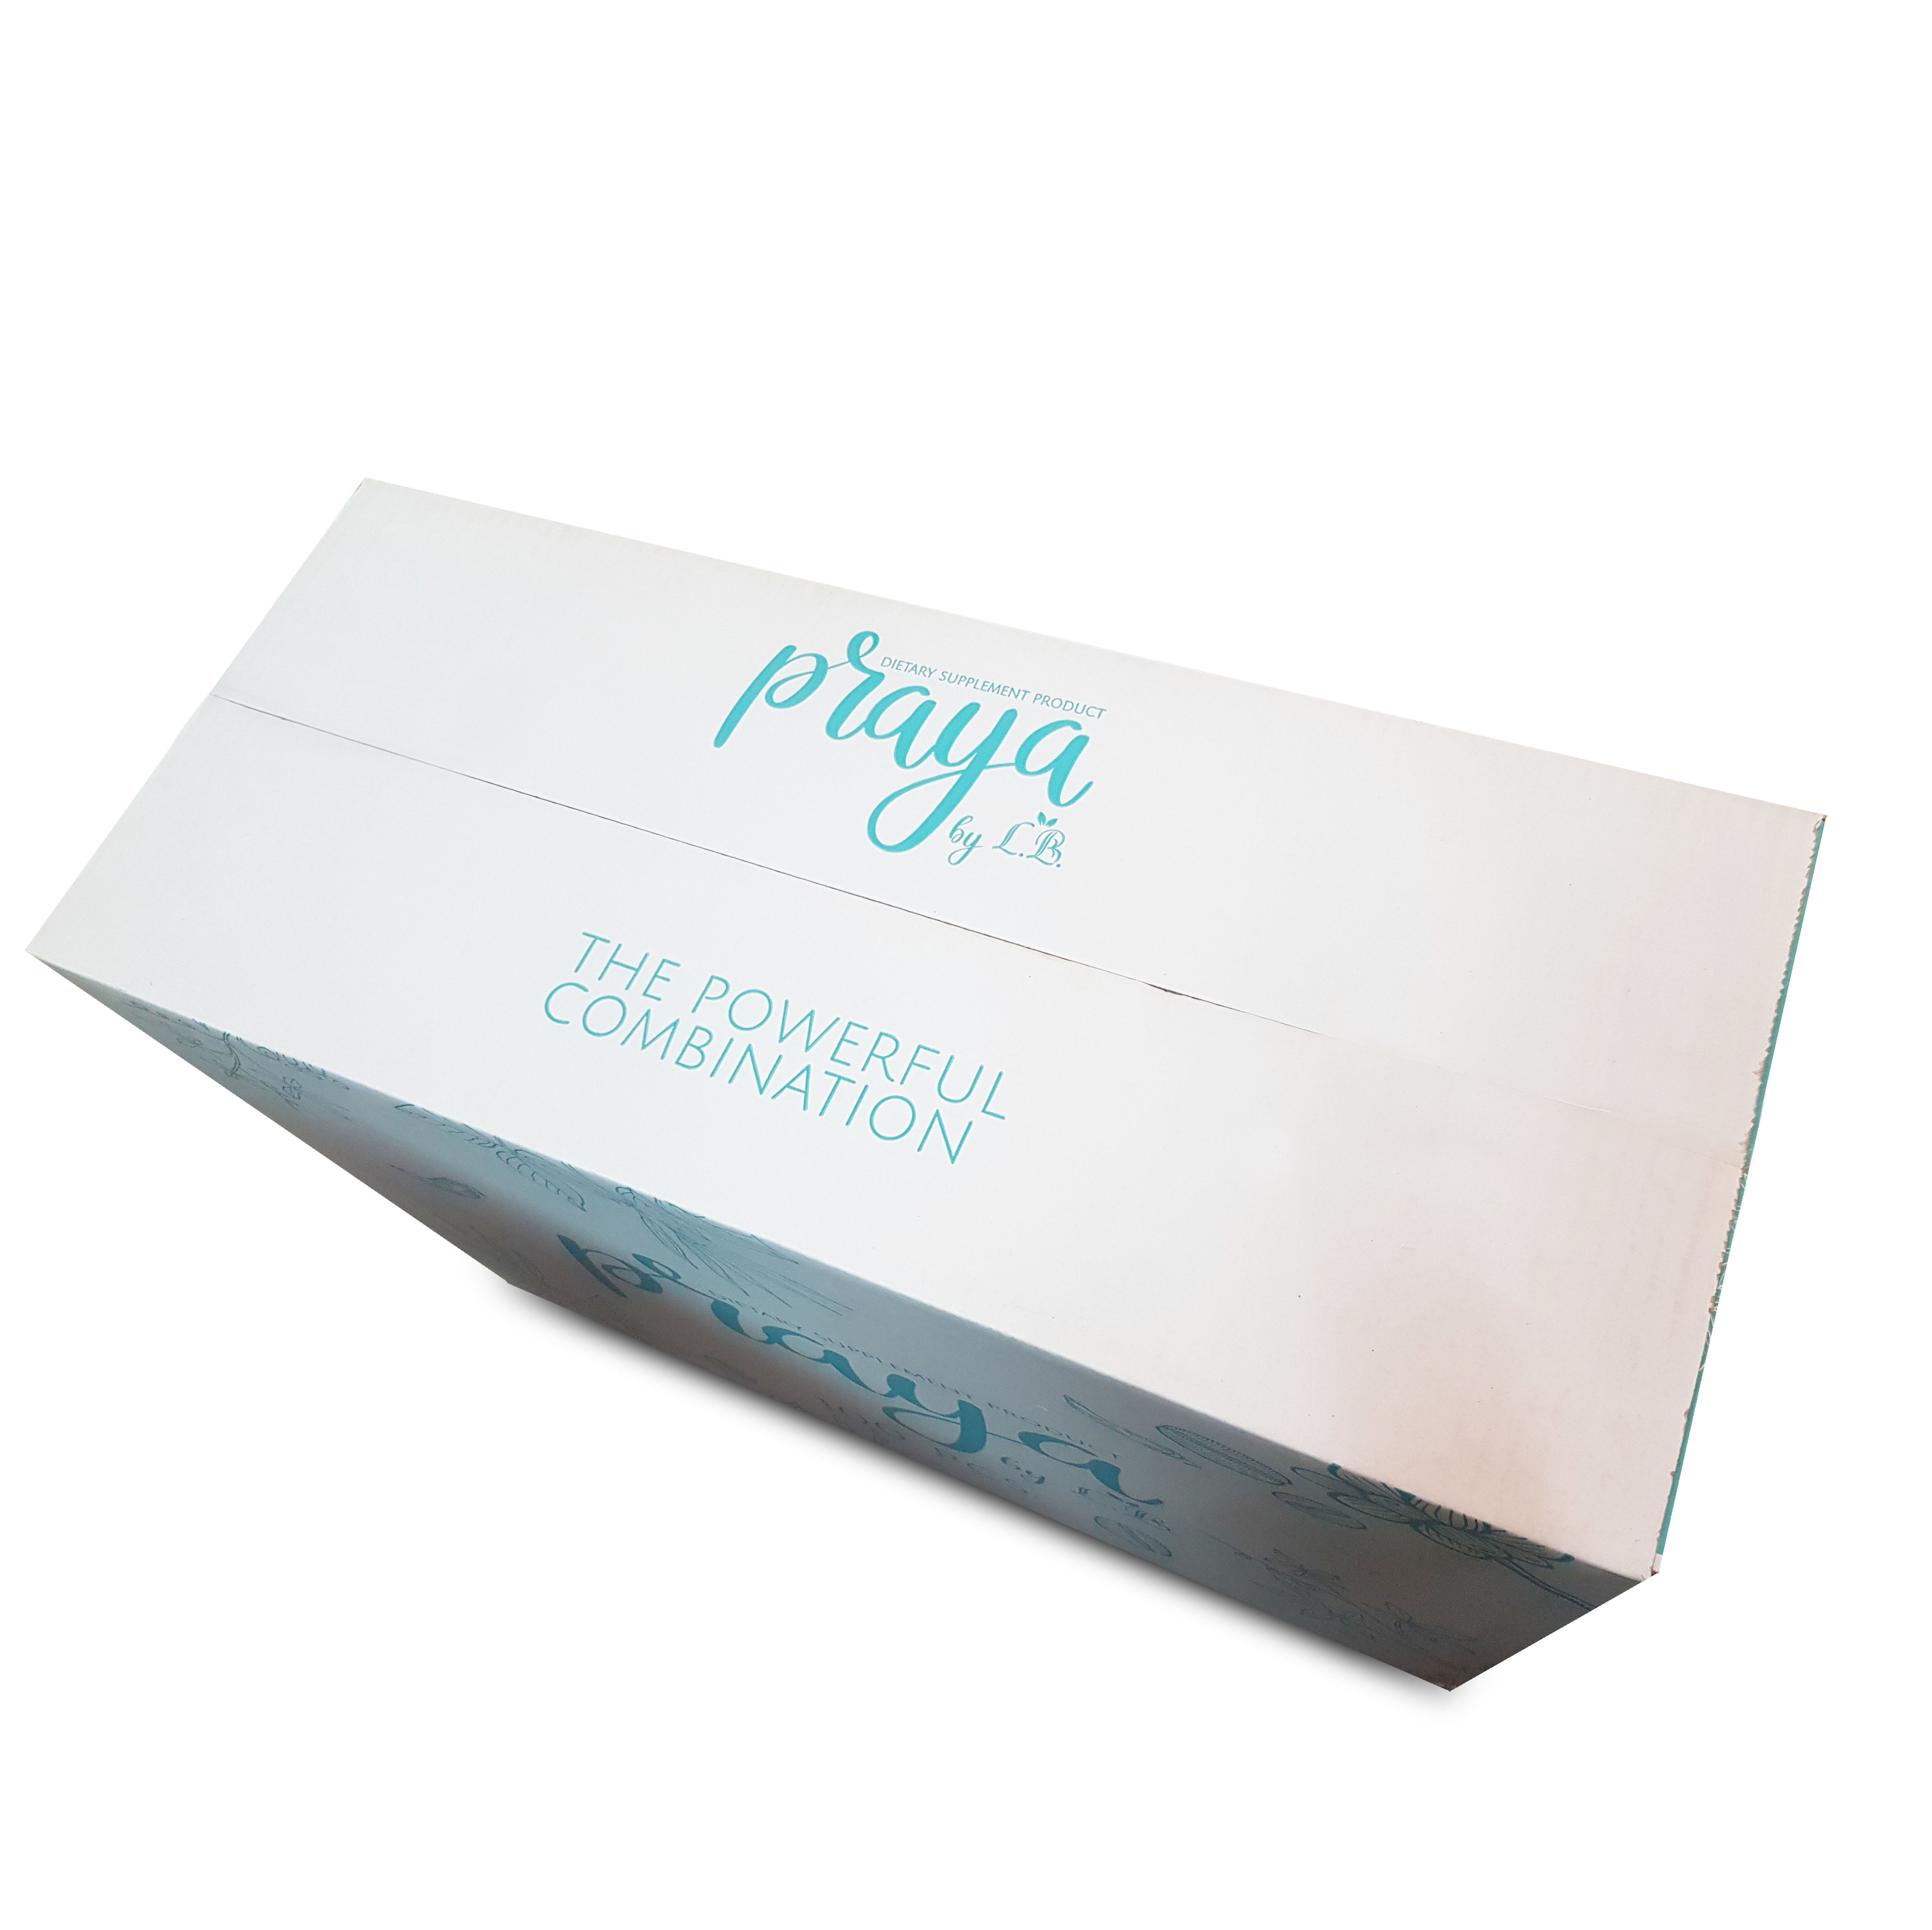 กล่องอาหารเสริม 
Brand Praya บรรจุ 100 ชิ้น
ขนาด 25.4x62x42cm.